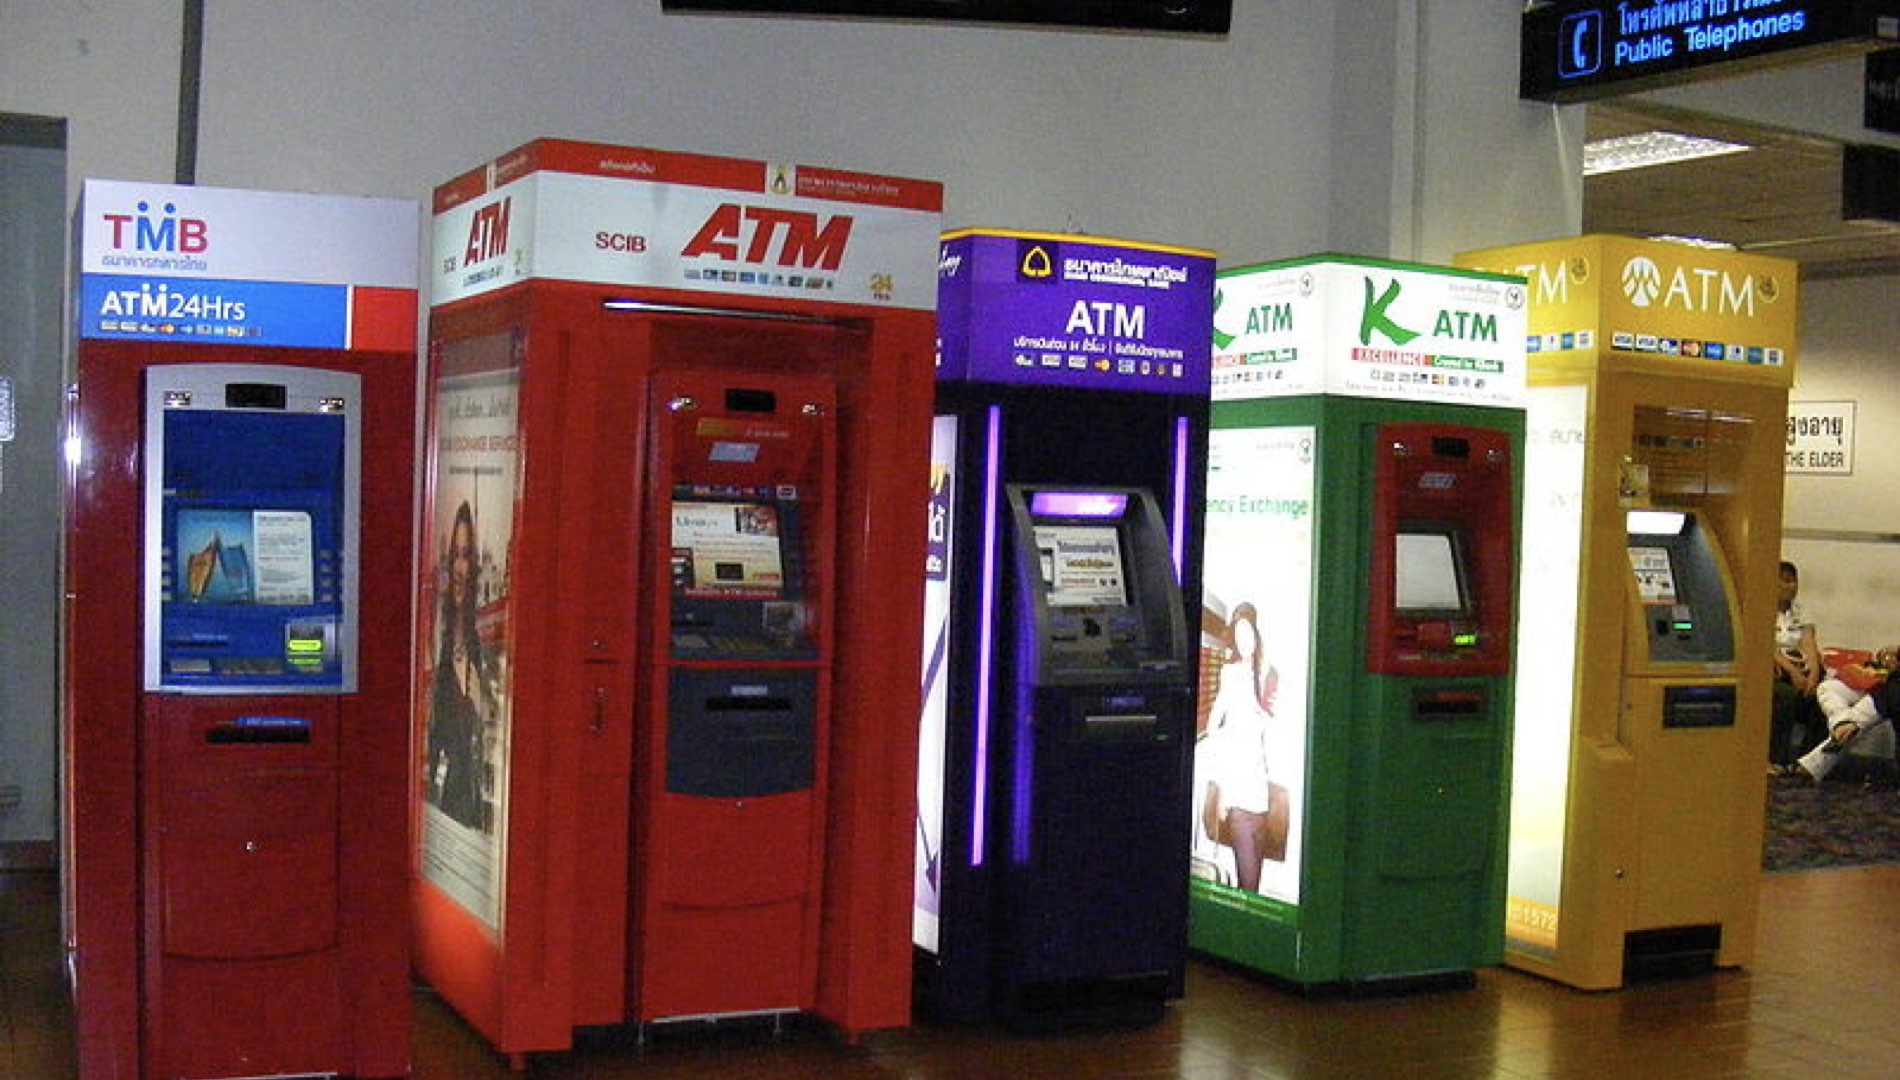 Kiosks at an airport